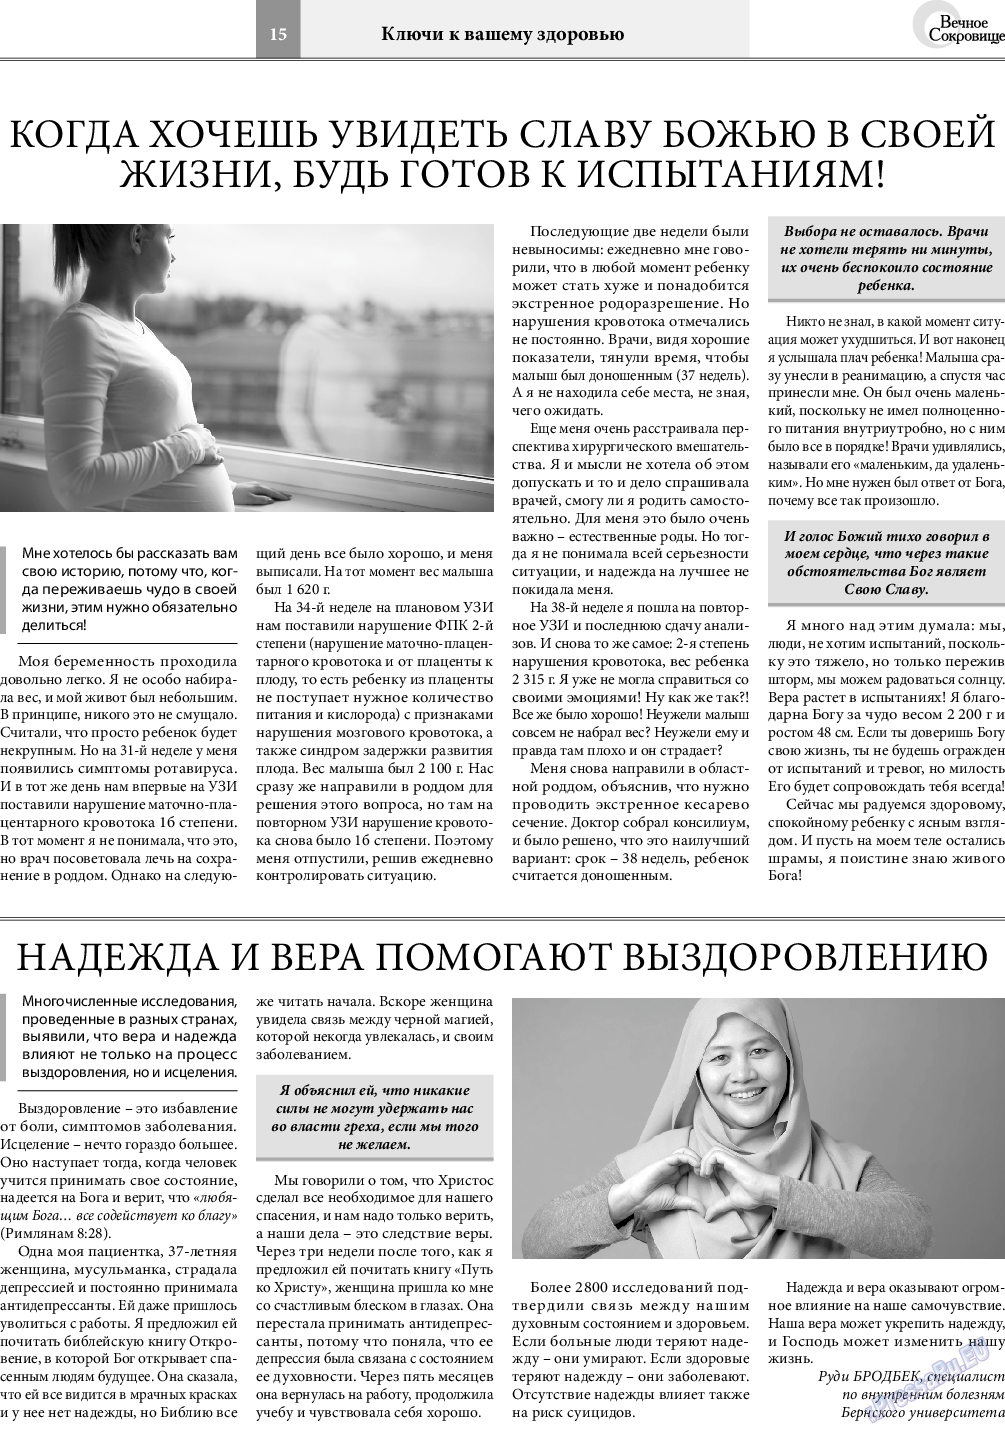 Вечное сокровище, газета. 2020 №3 стр.15